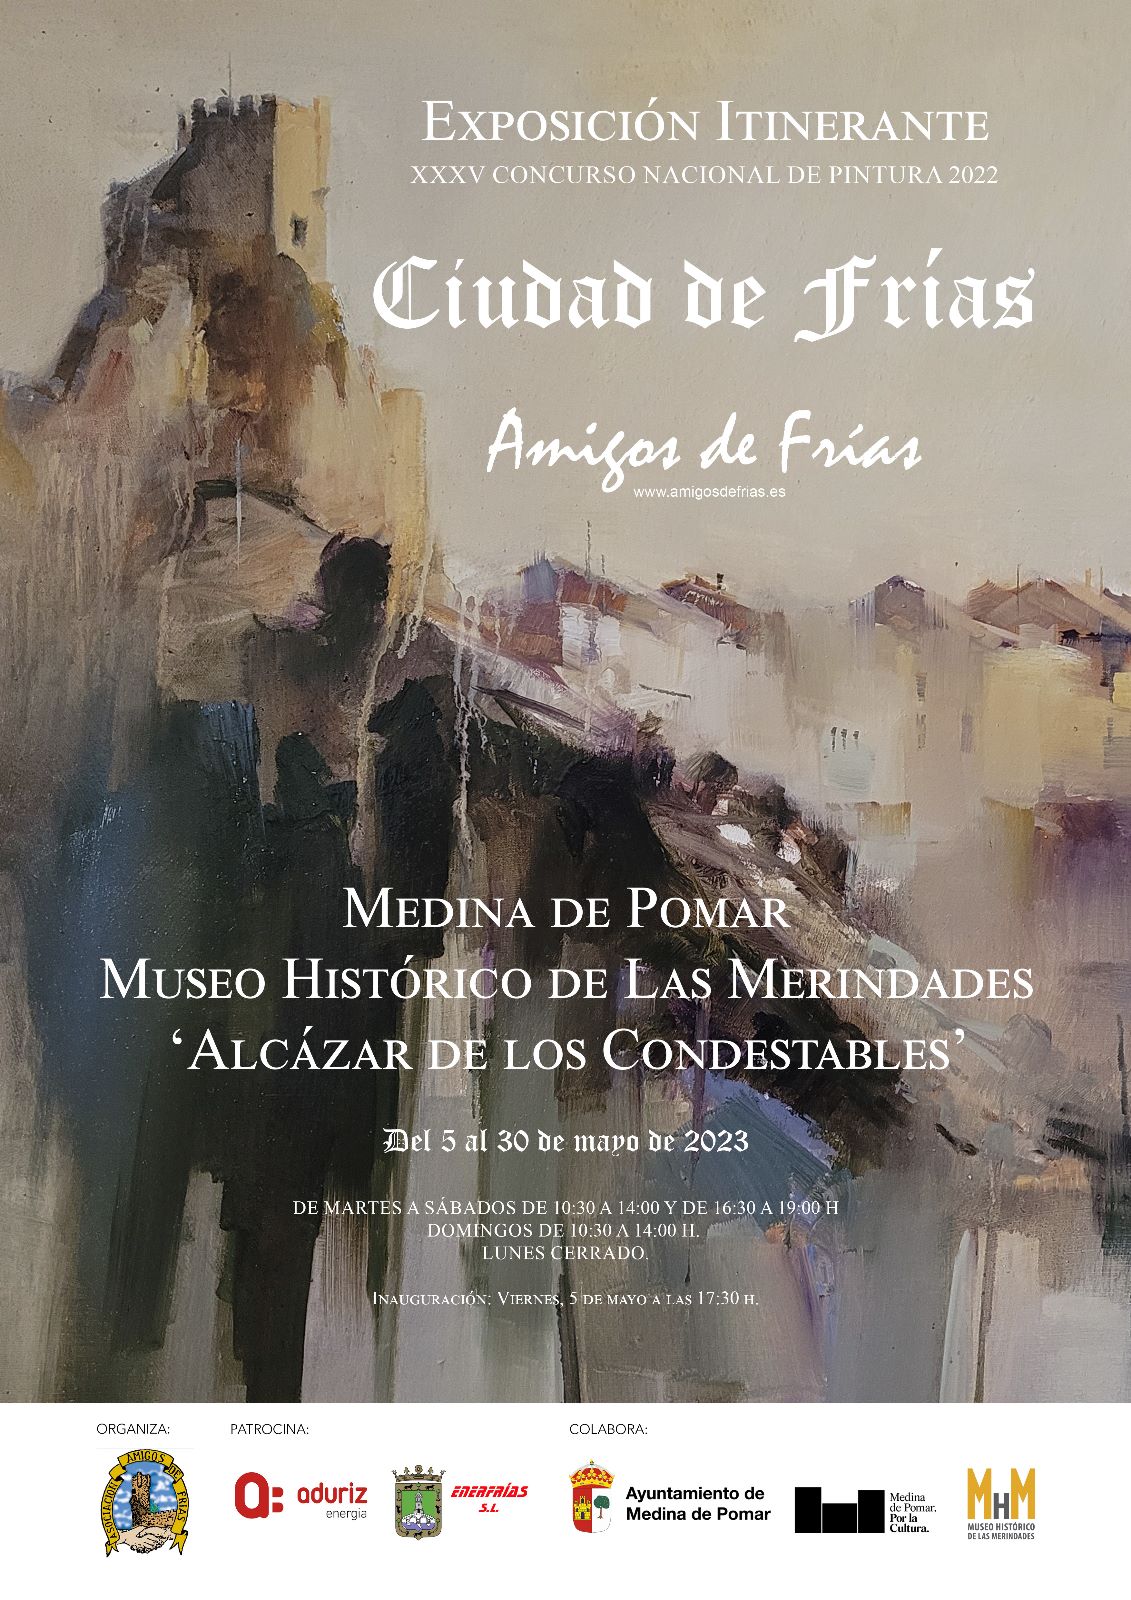 EXPOSICIÓN ITINERANTE "CIUDAD DE FRIAS"